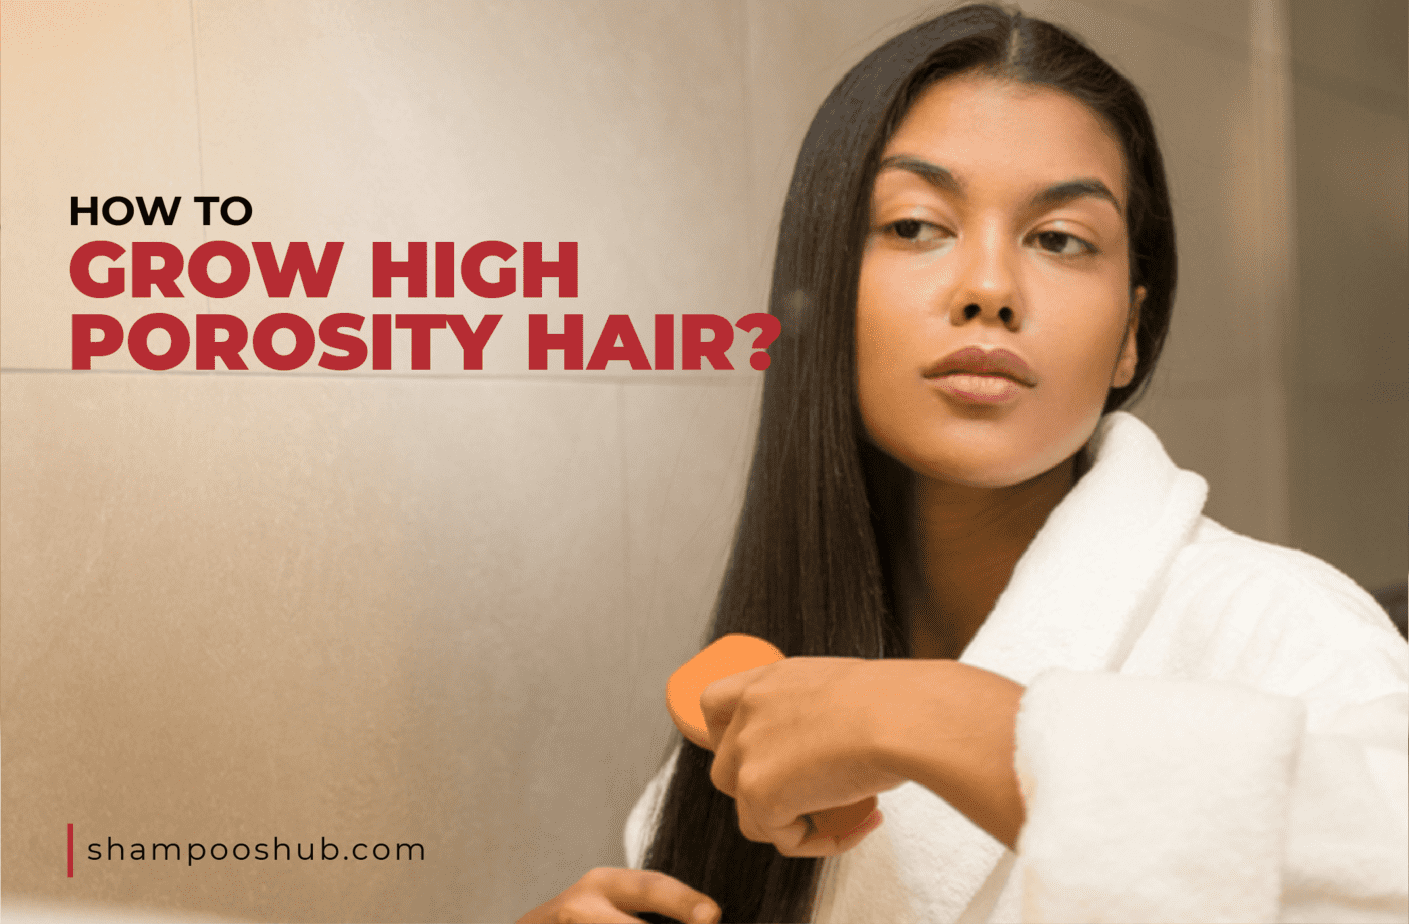 How To Grow High Porosity Hair?